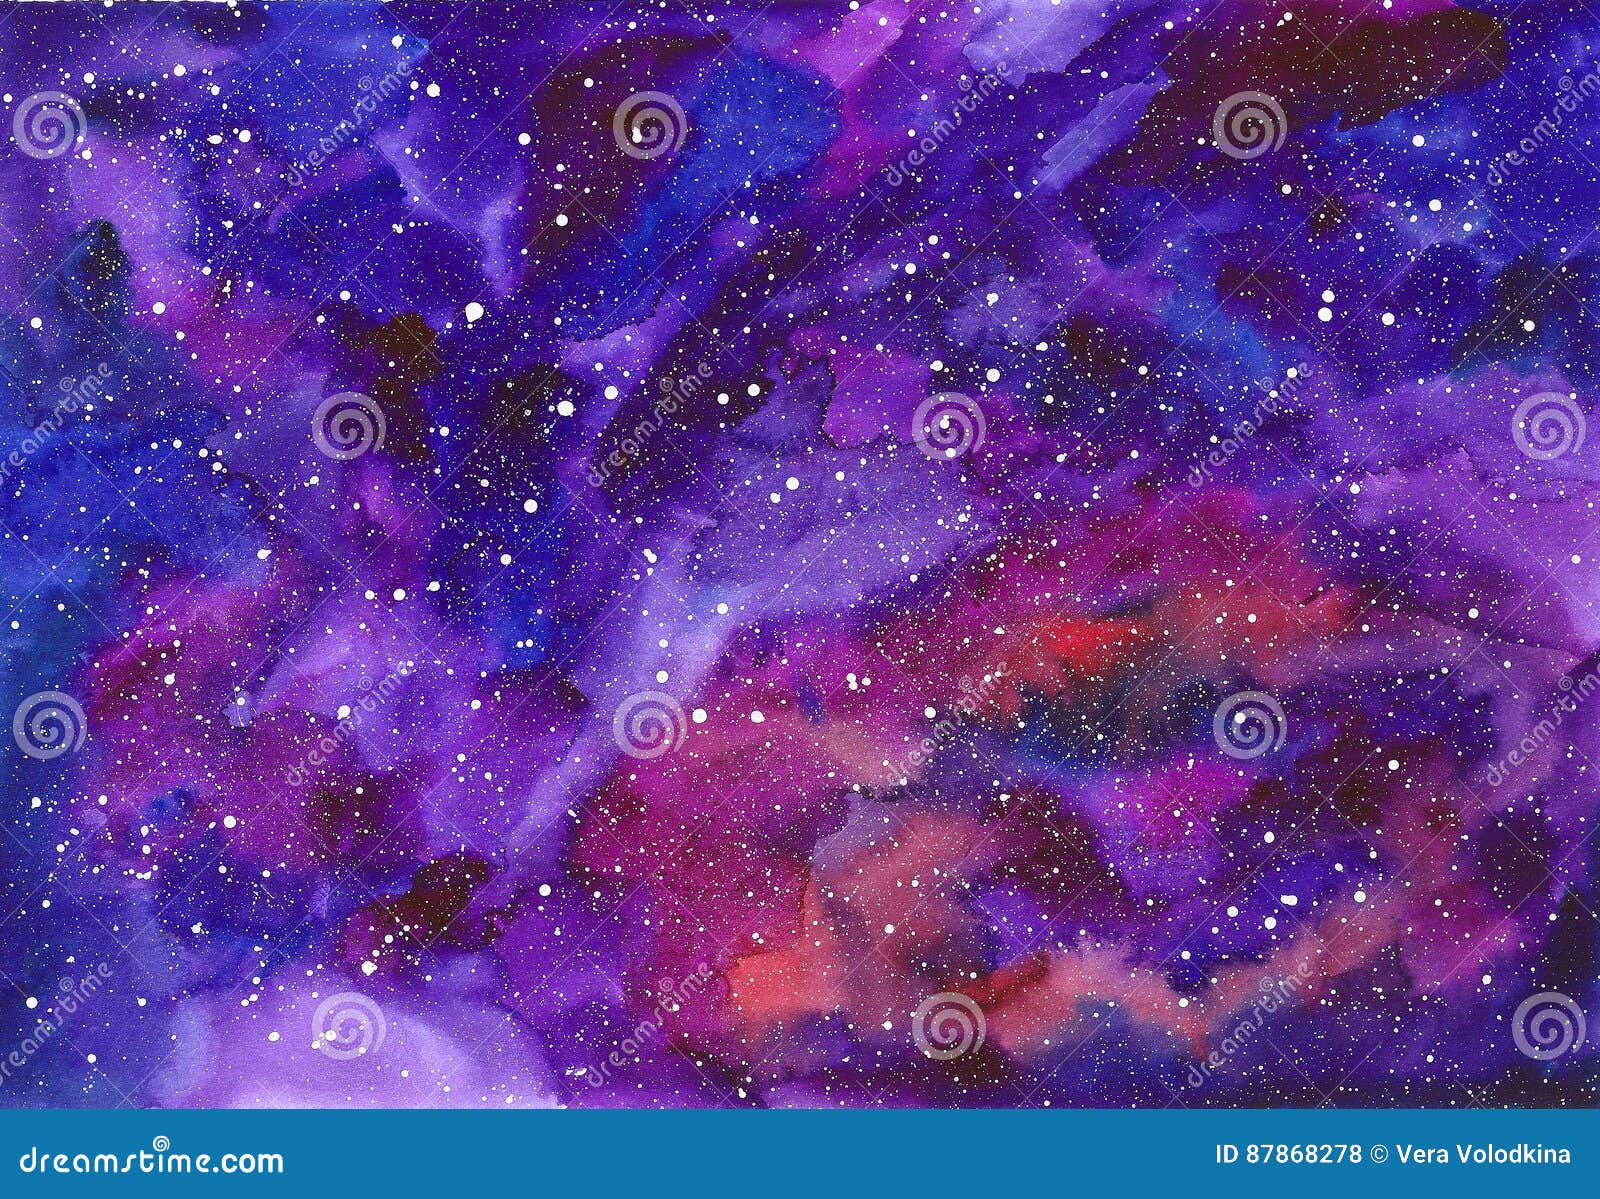 Không gian vũ trụ đầy đặn những hoạ tiết màu sắc tuyệt đẹp, rực rỡ và kỳ lạ. Bức tranh này sẽ giúp bạn đắm chìm vào thế giới bất tận đó và gia tăng trí tưởng tượng, sự sáng tạo của mình. Hãy để màu sắc trong không gian vũ trụ làm cho cuộc sống của bạn trở nên thú vị, độc đáo hơn.